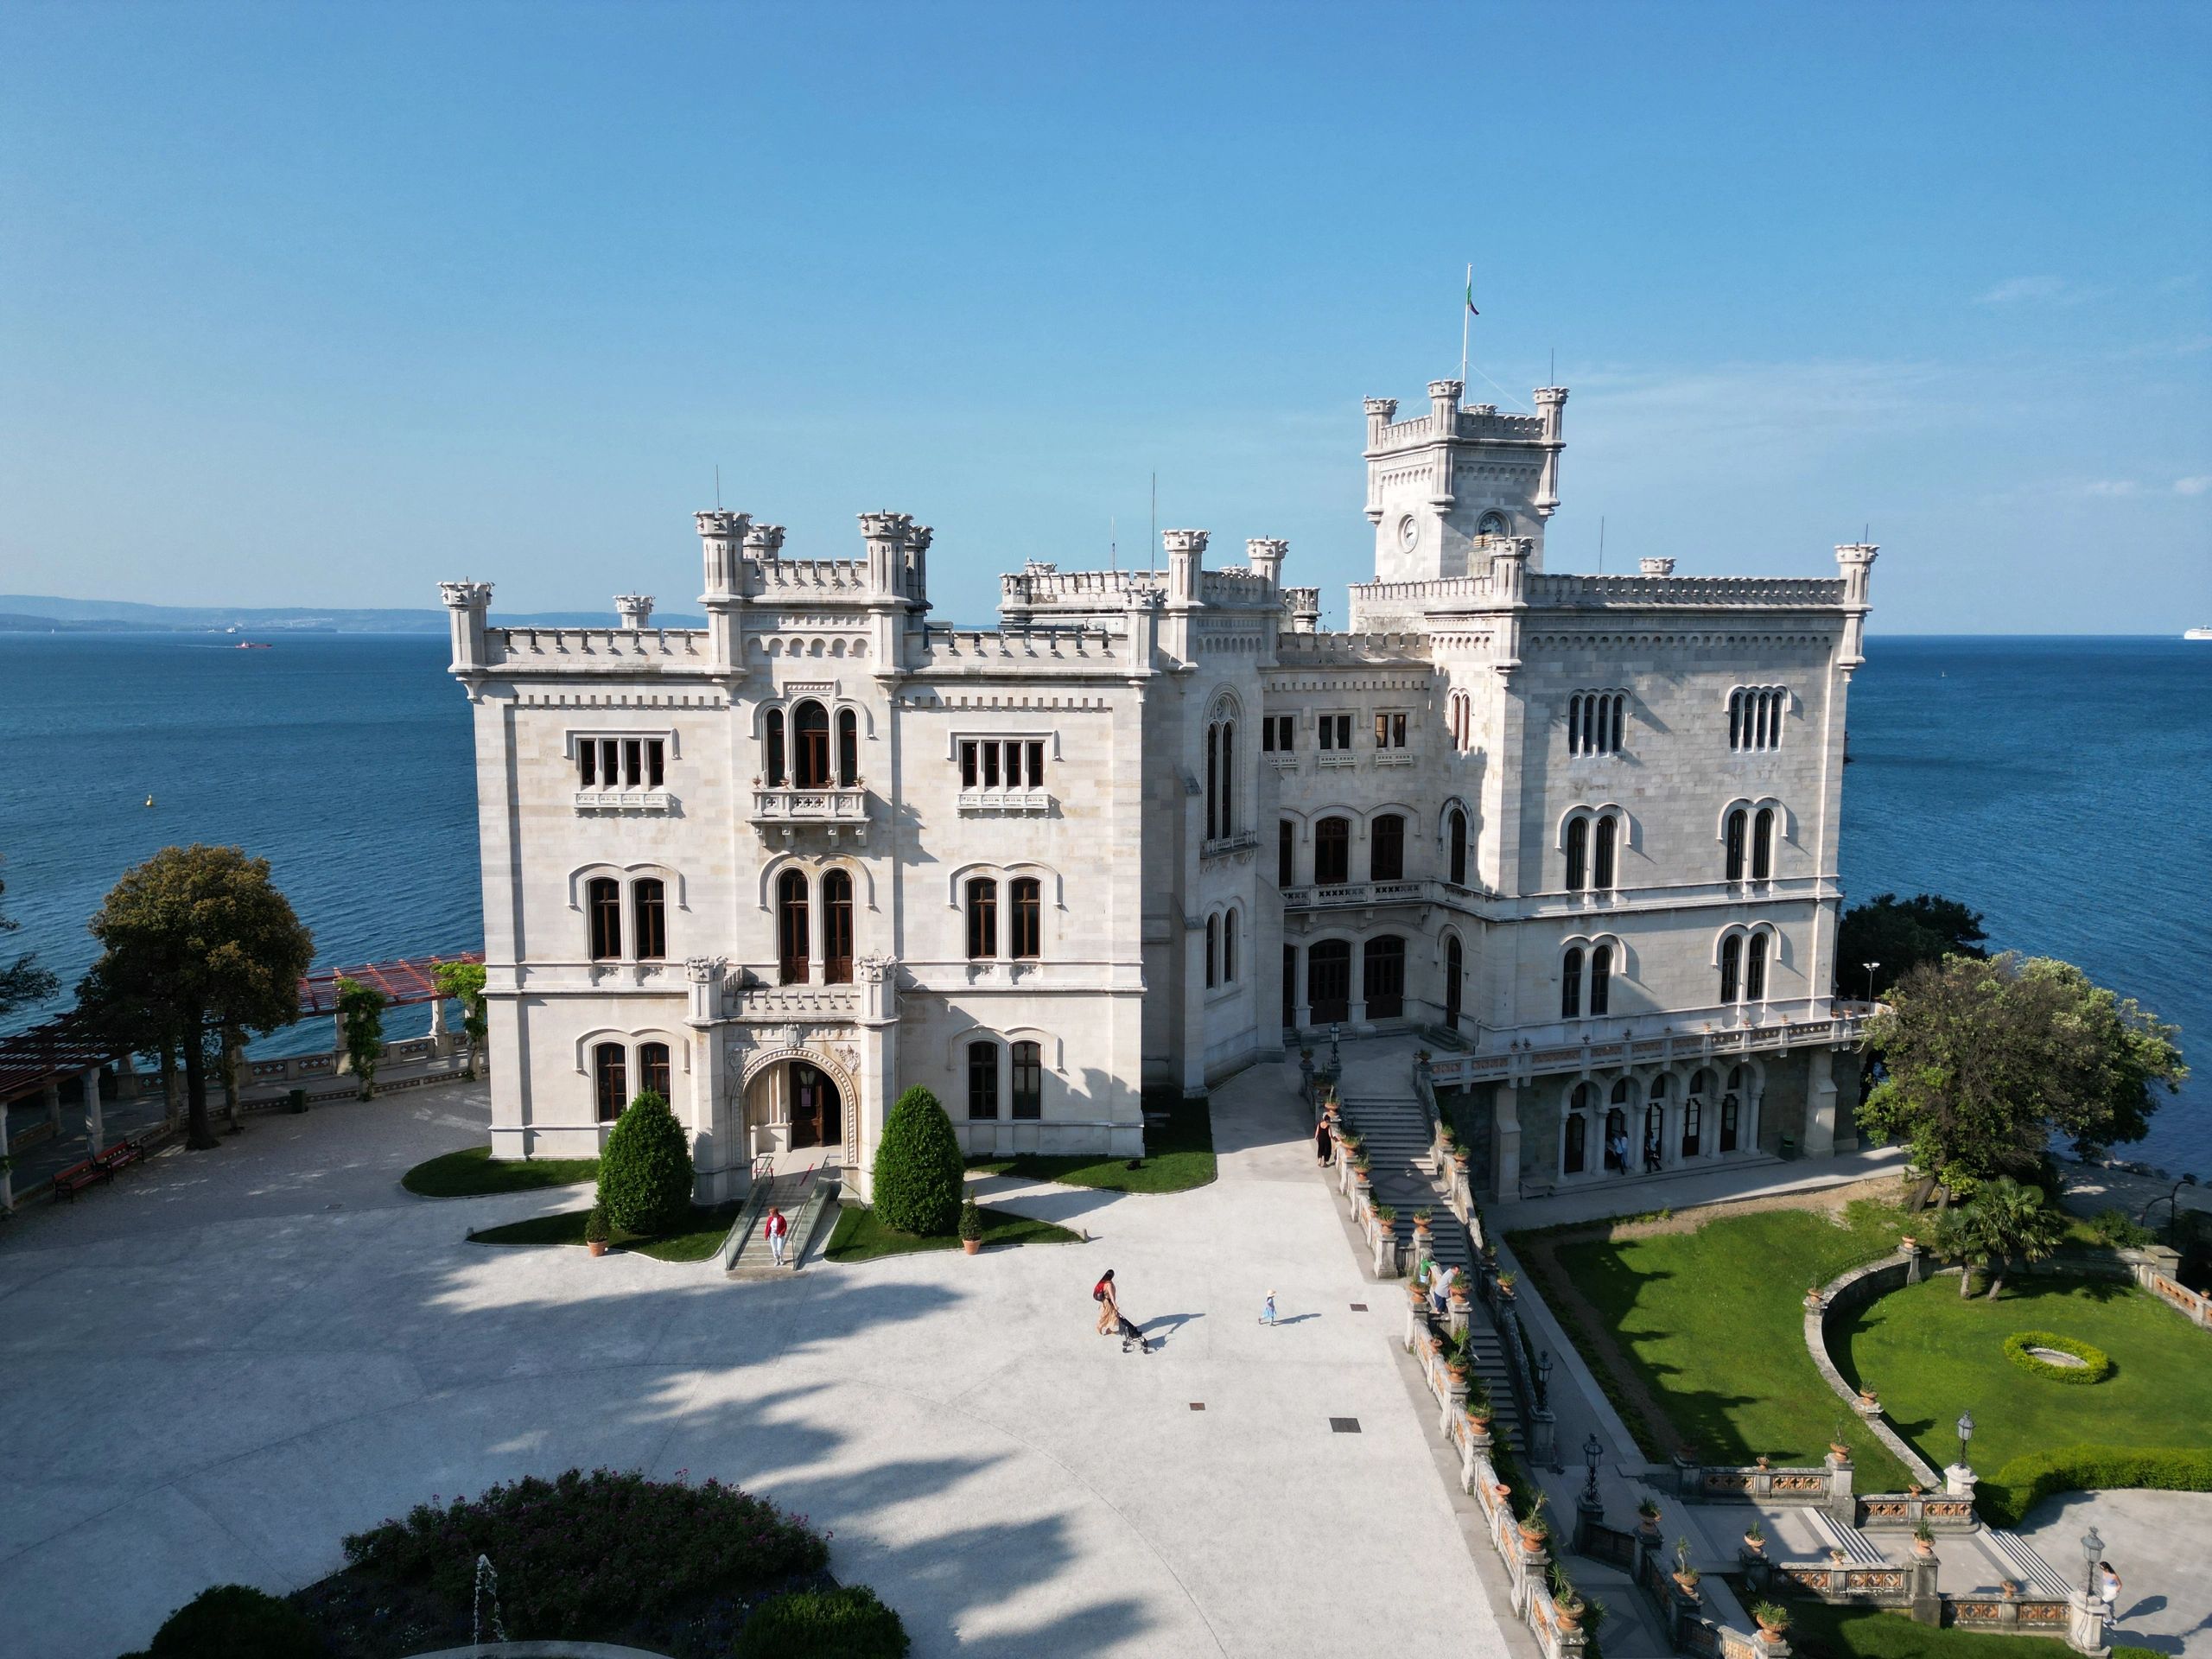 Ripresa aerea castello di Miramare a Trieste - Italia, regione Friuli Venezia Giulia